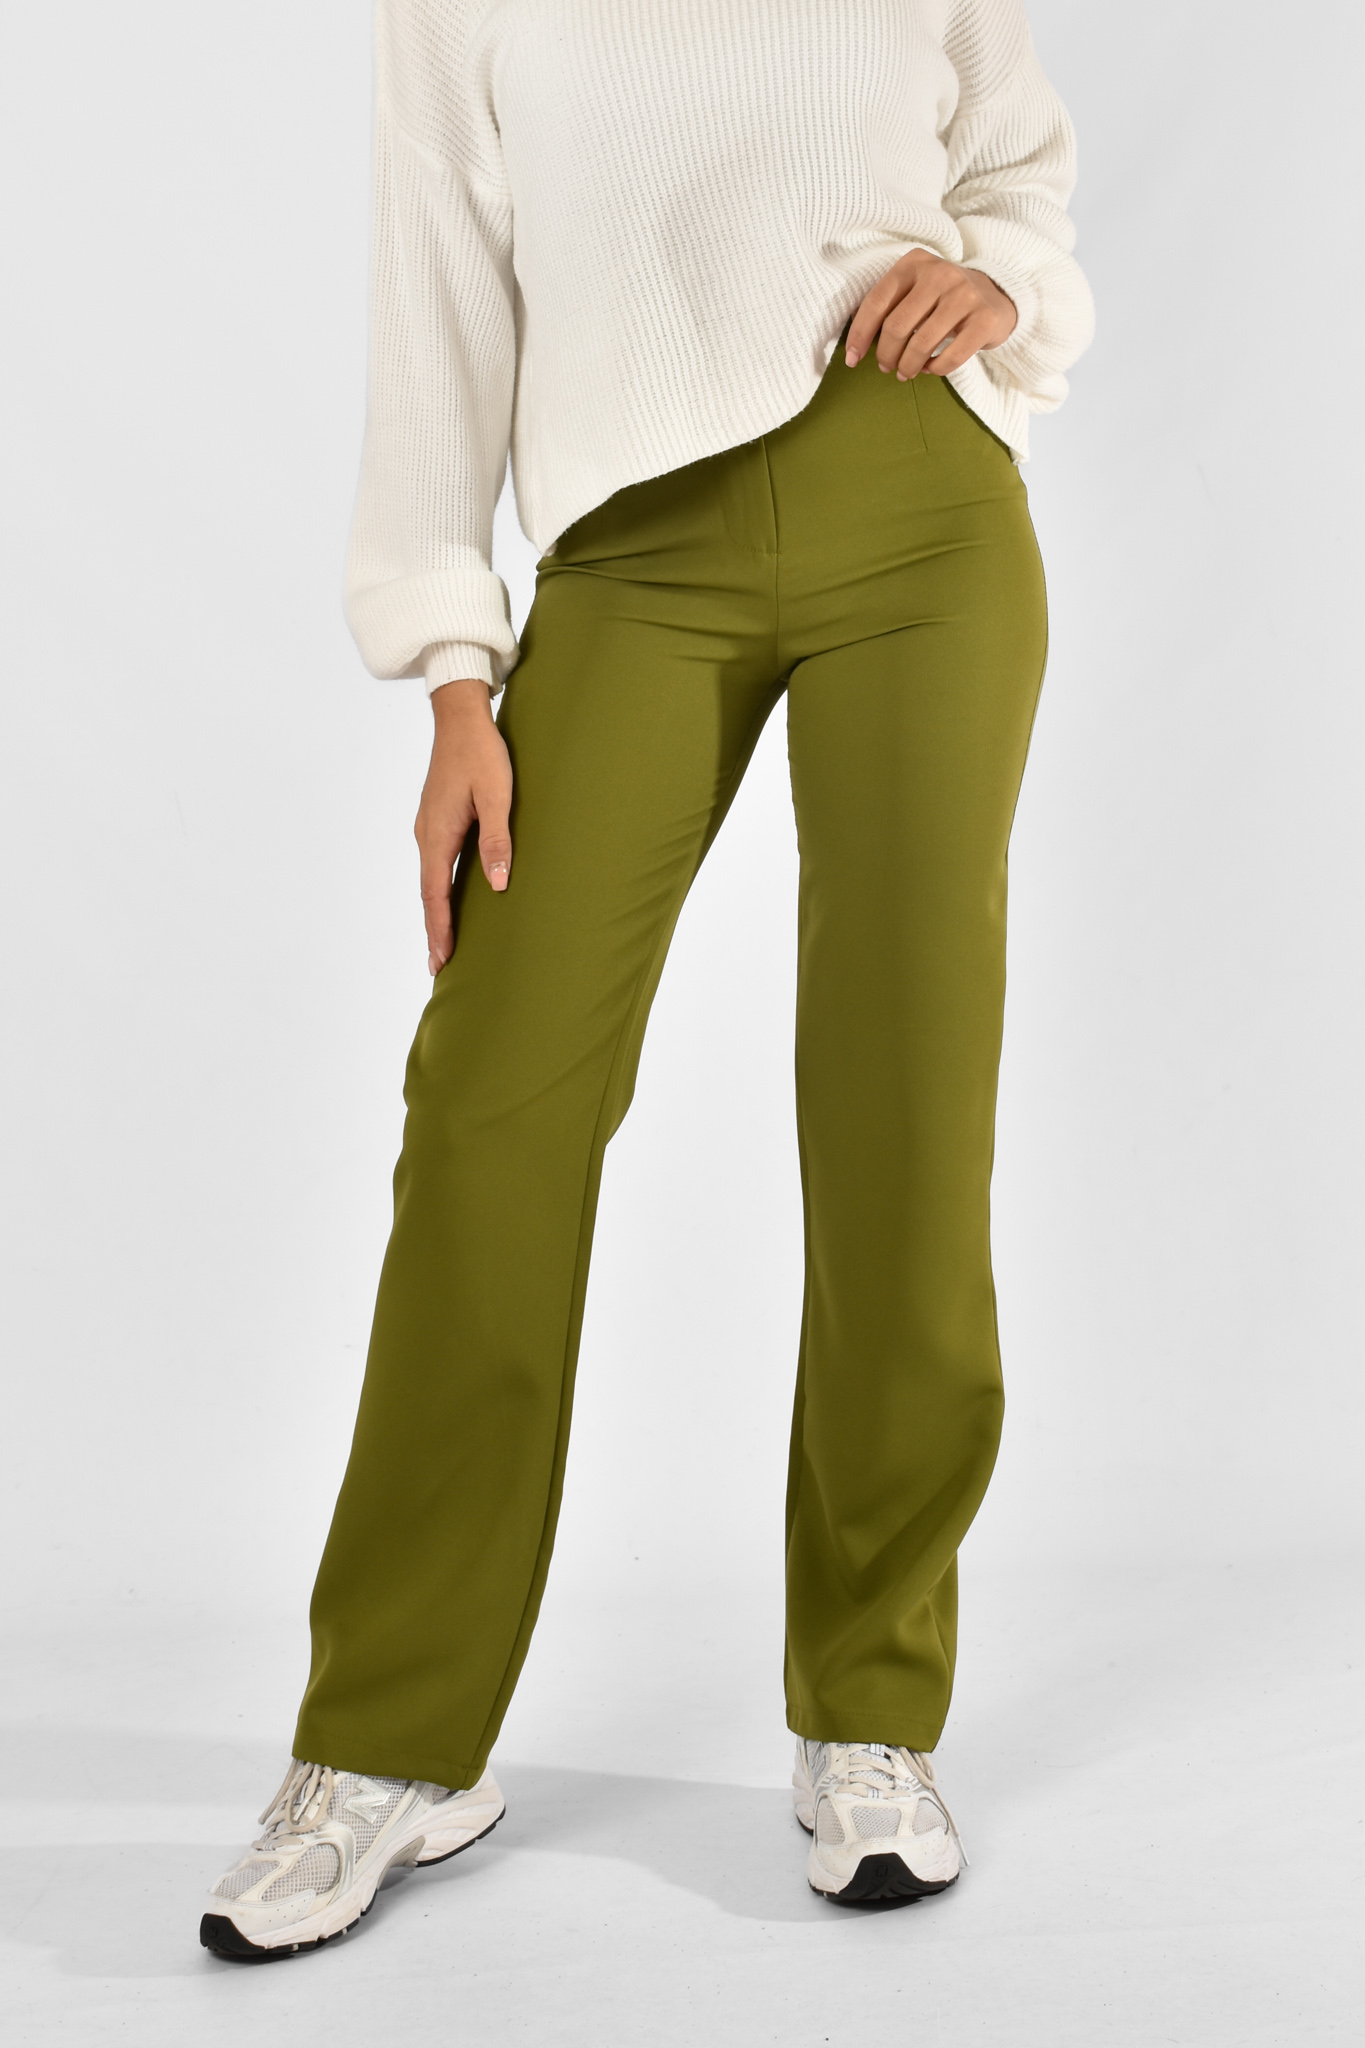 Romy pantalon groen